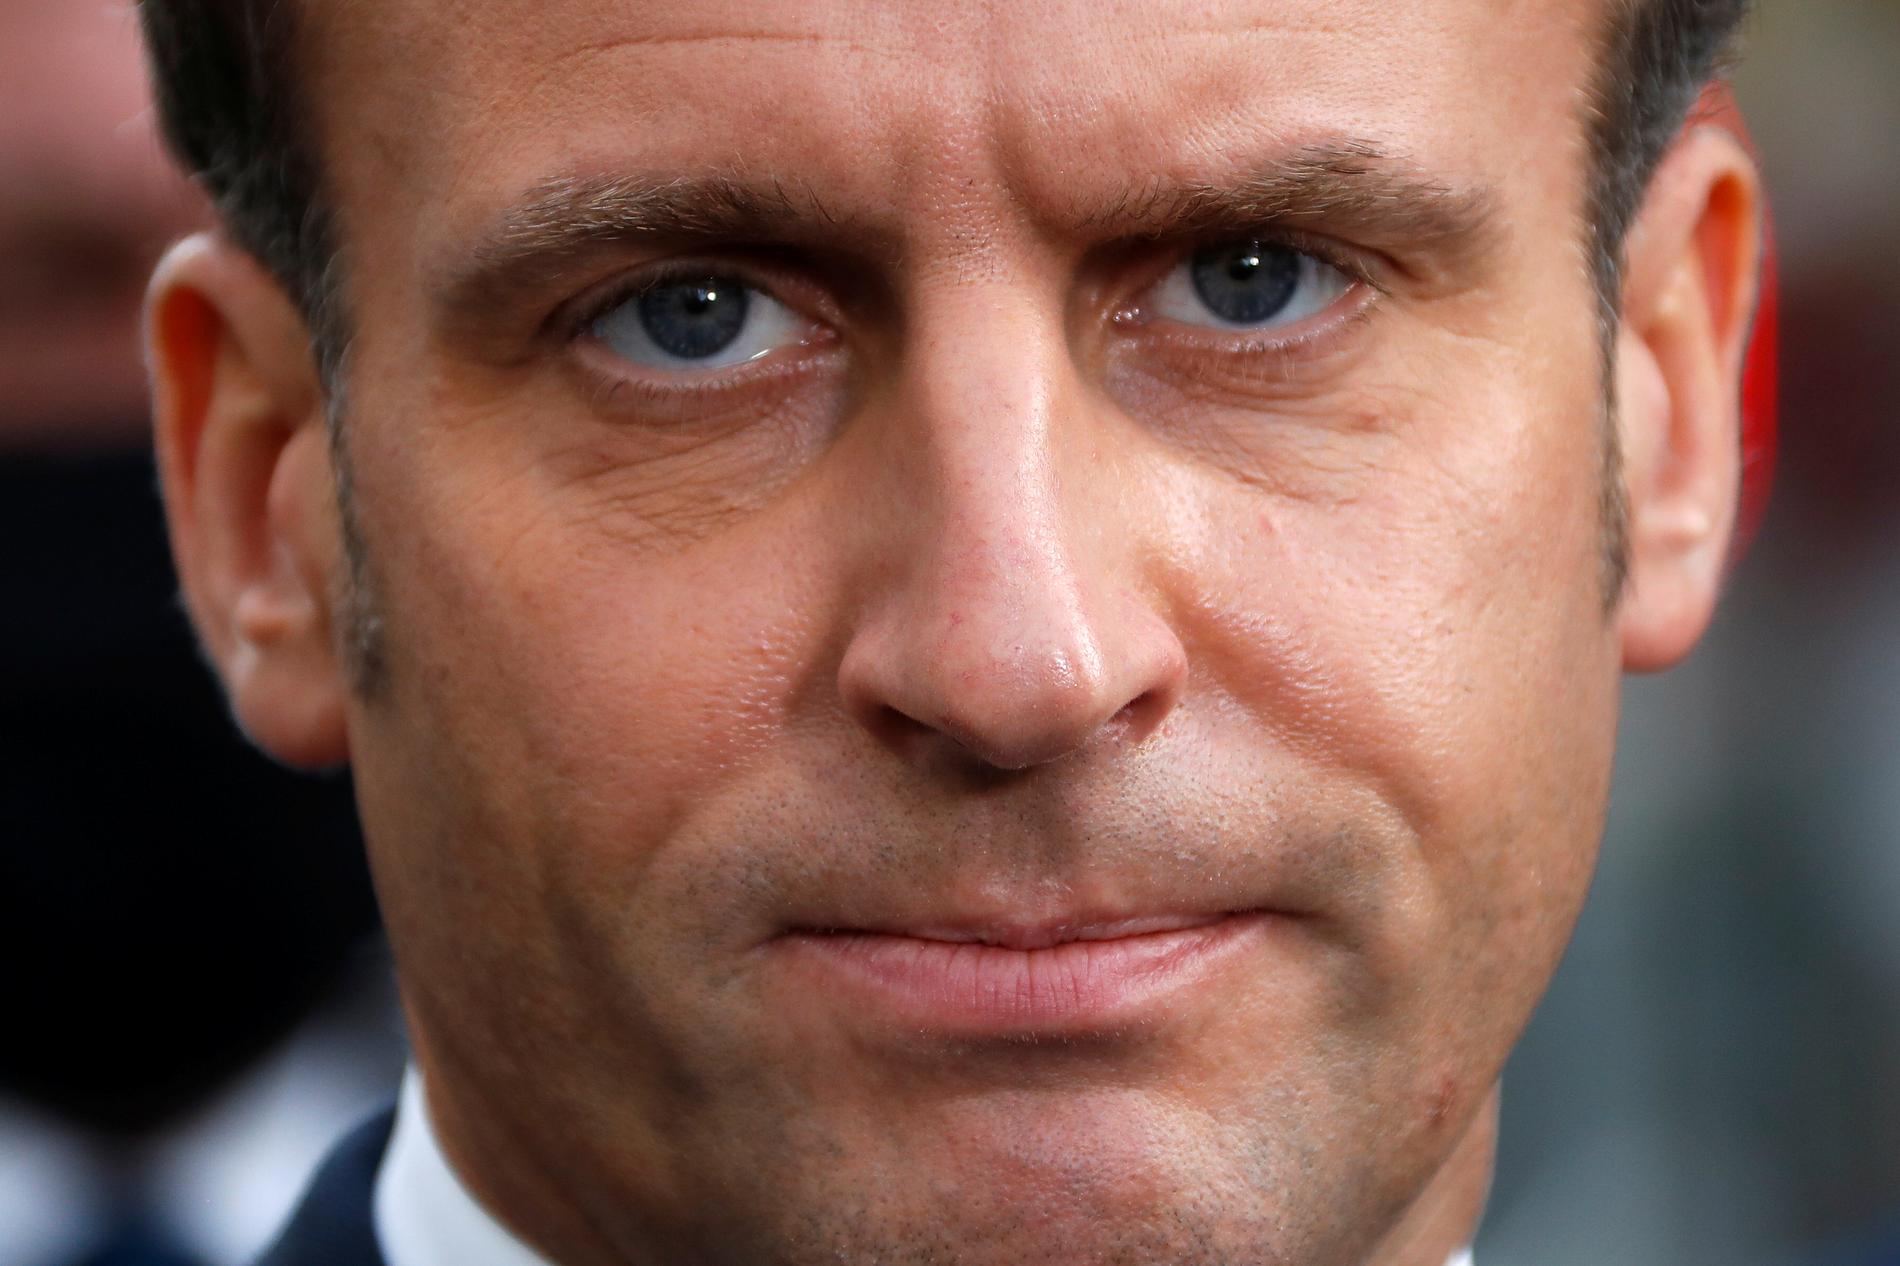 Frankrikes president Emmanuel Macron har kallat dådet för en ”islamistiskt terroristattack”.